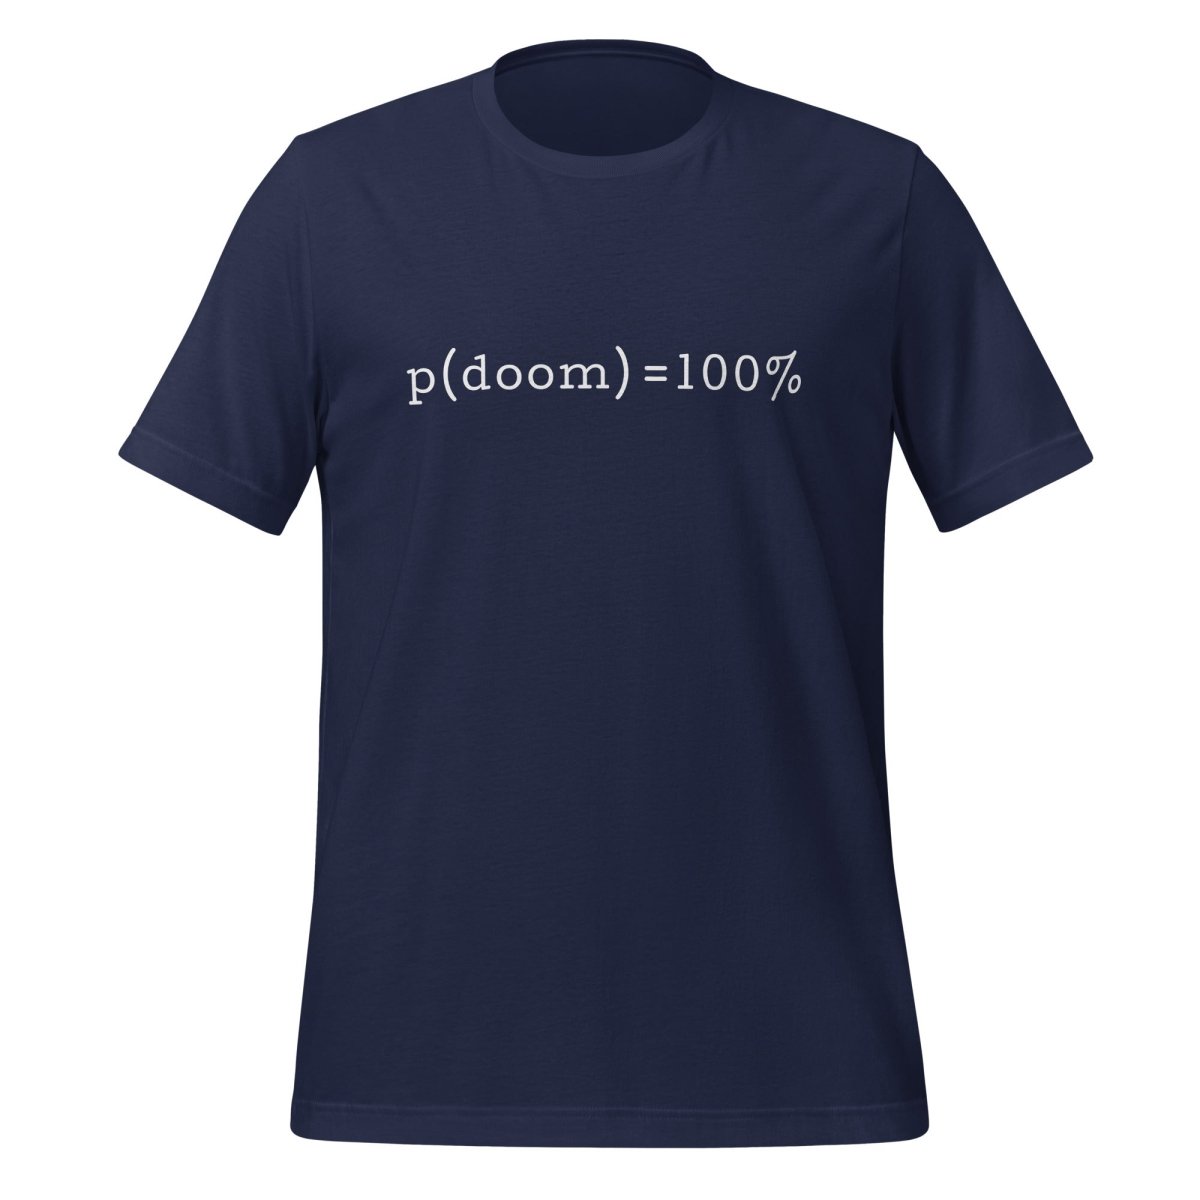 p(doom) = 100% T - Shirt (unisex) - Navy - AI Store